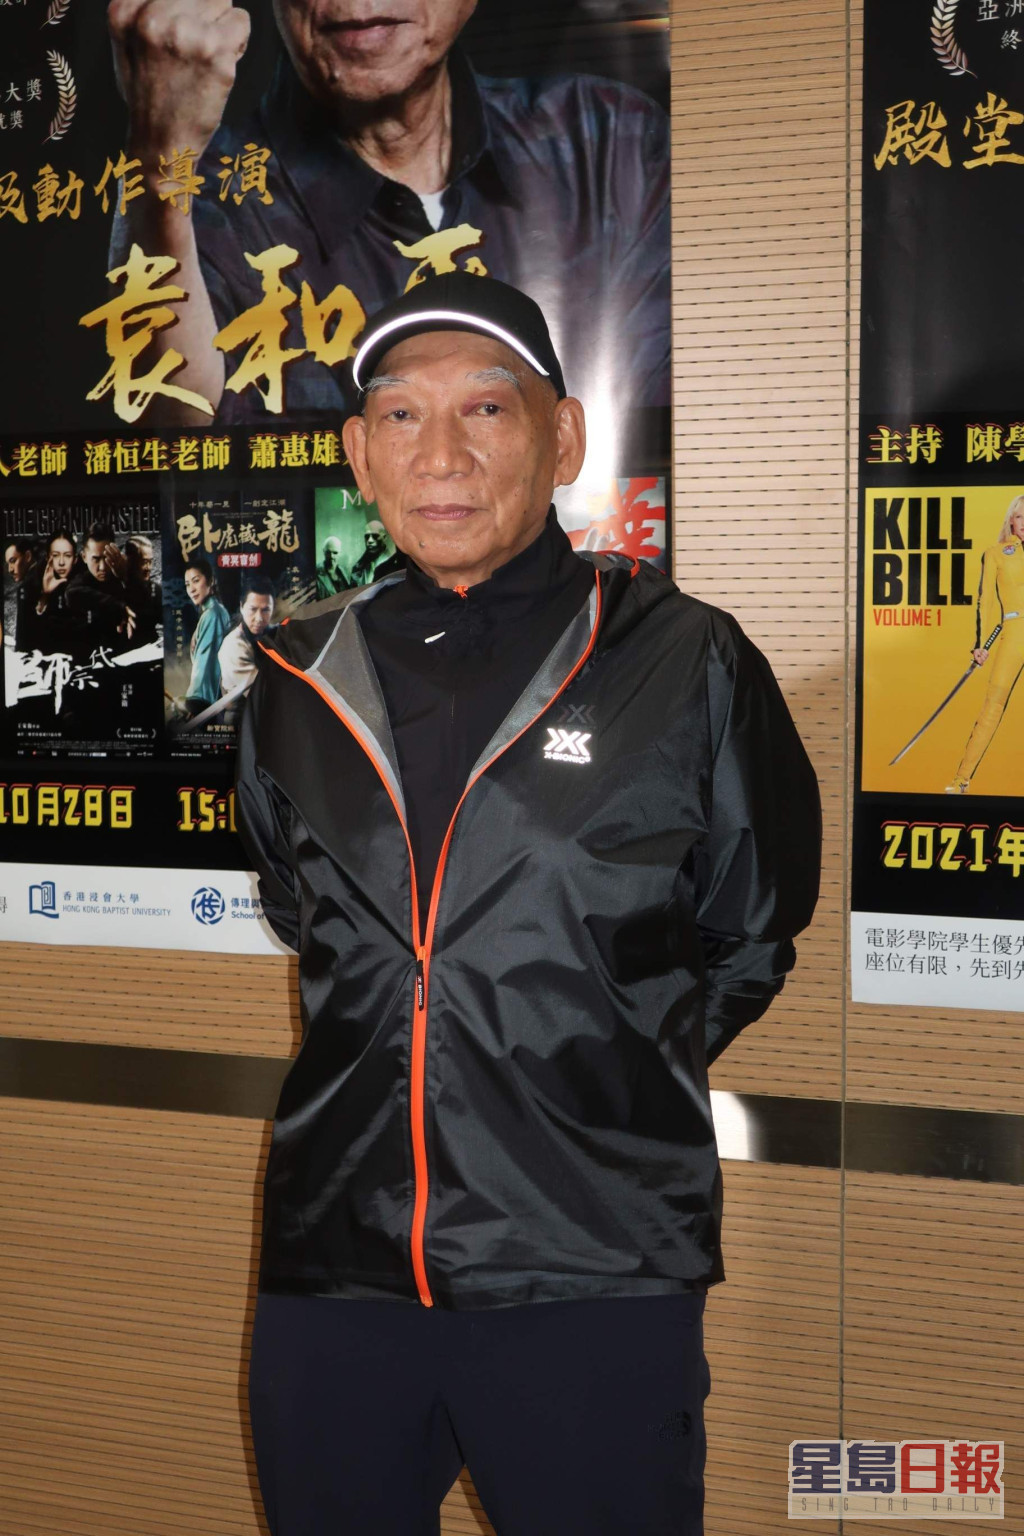 「八爷」袁和平的父亲袁小田是中国电影史上第一位武术指导。